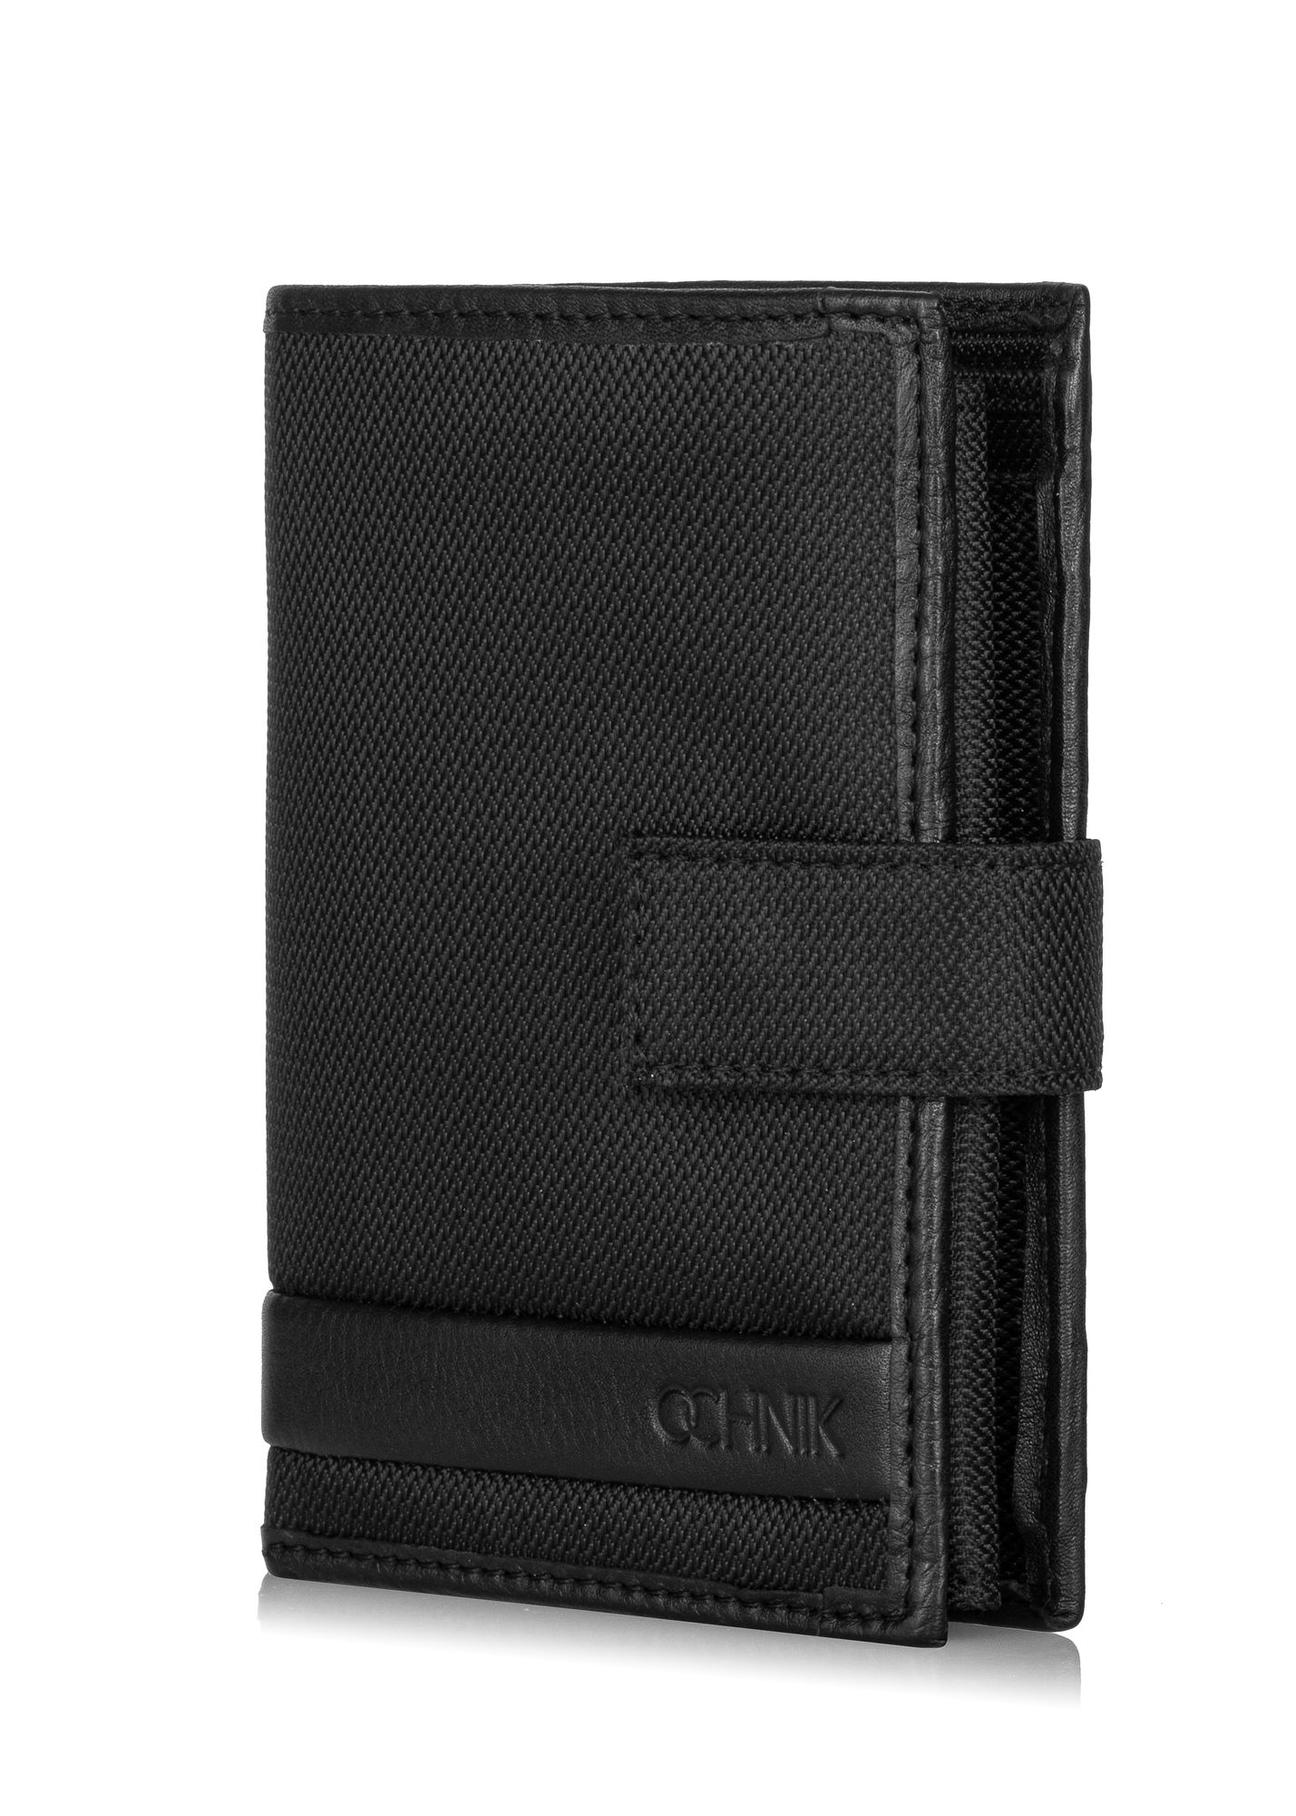 Czarny rozkładany portfel męski  PORMN-0017-99(Z23)